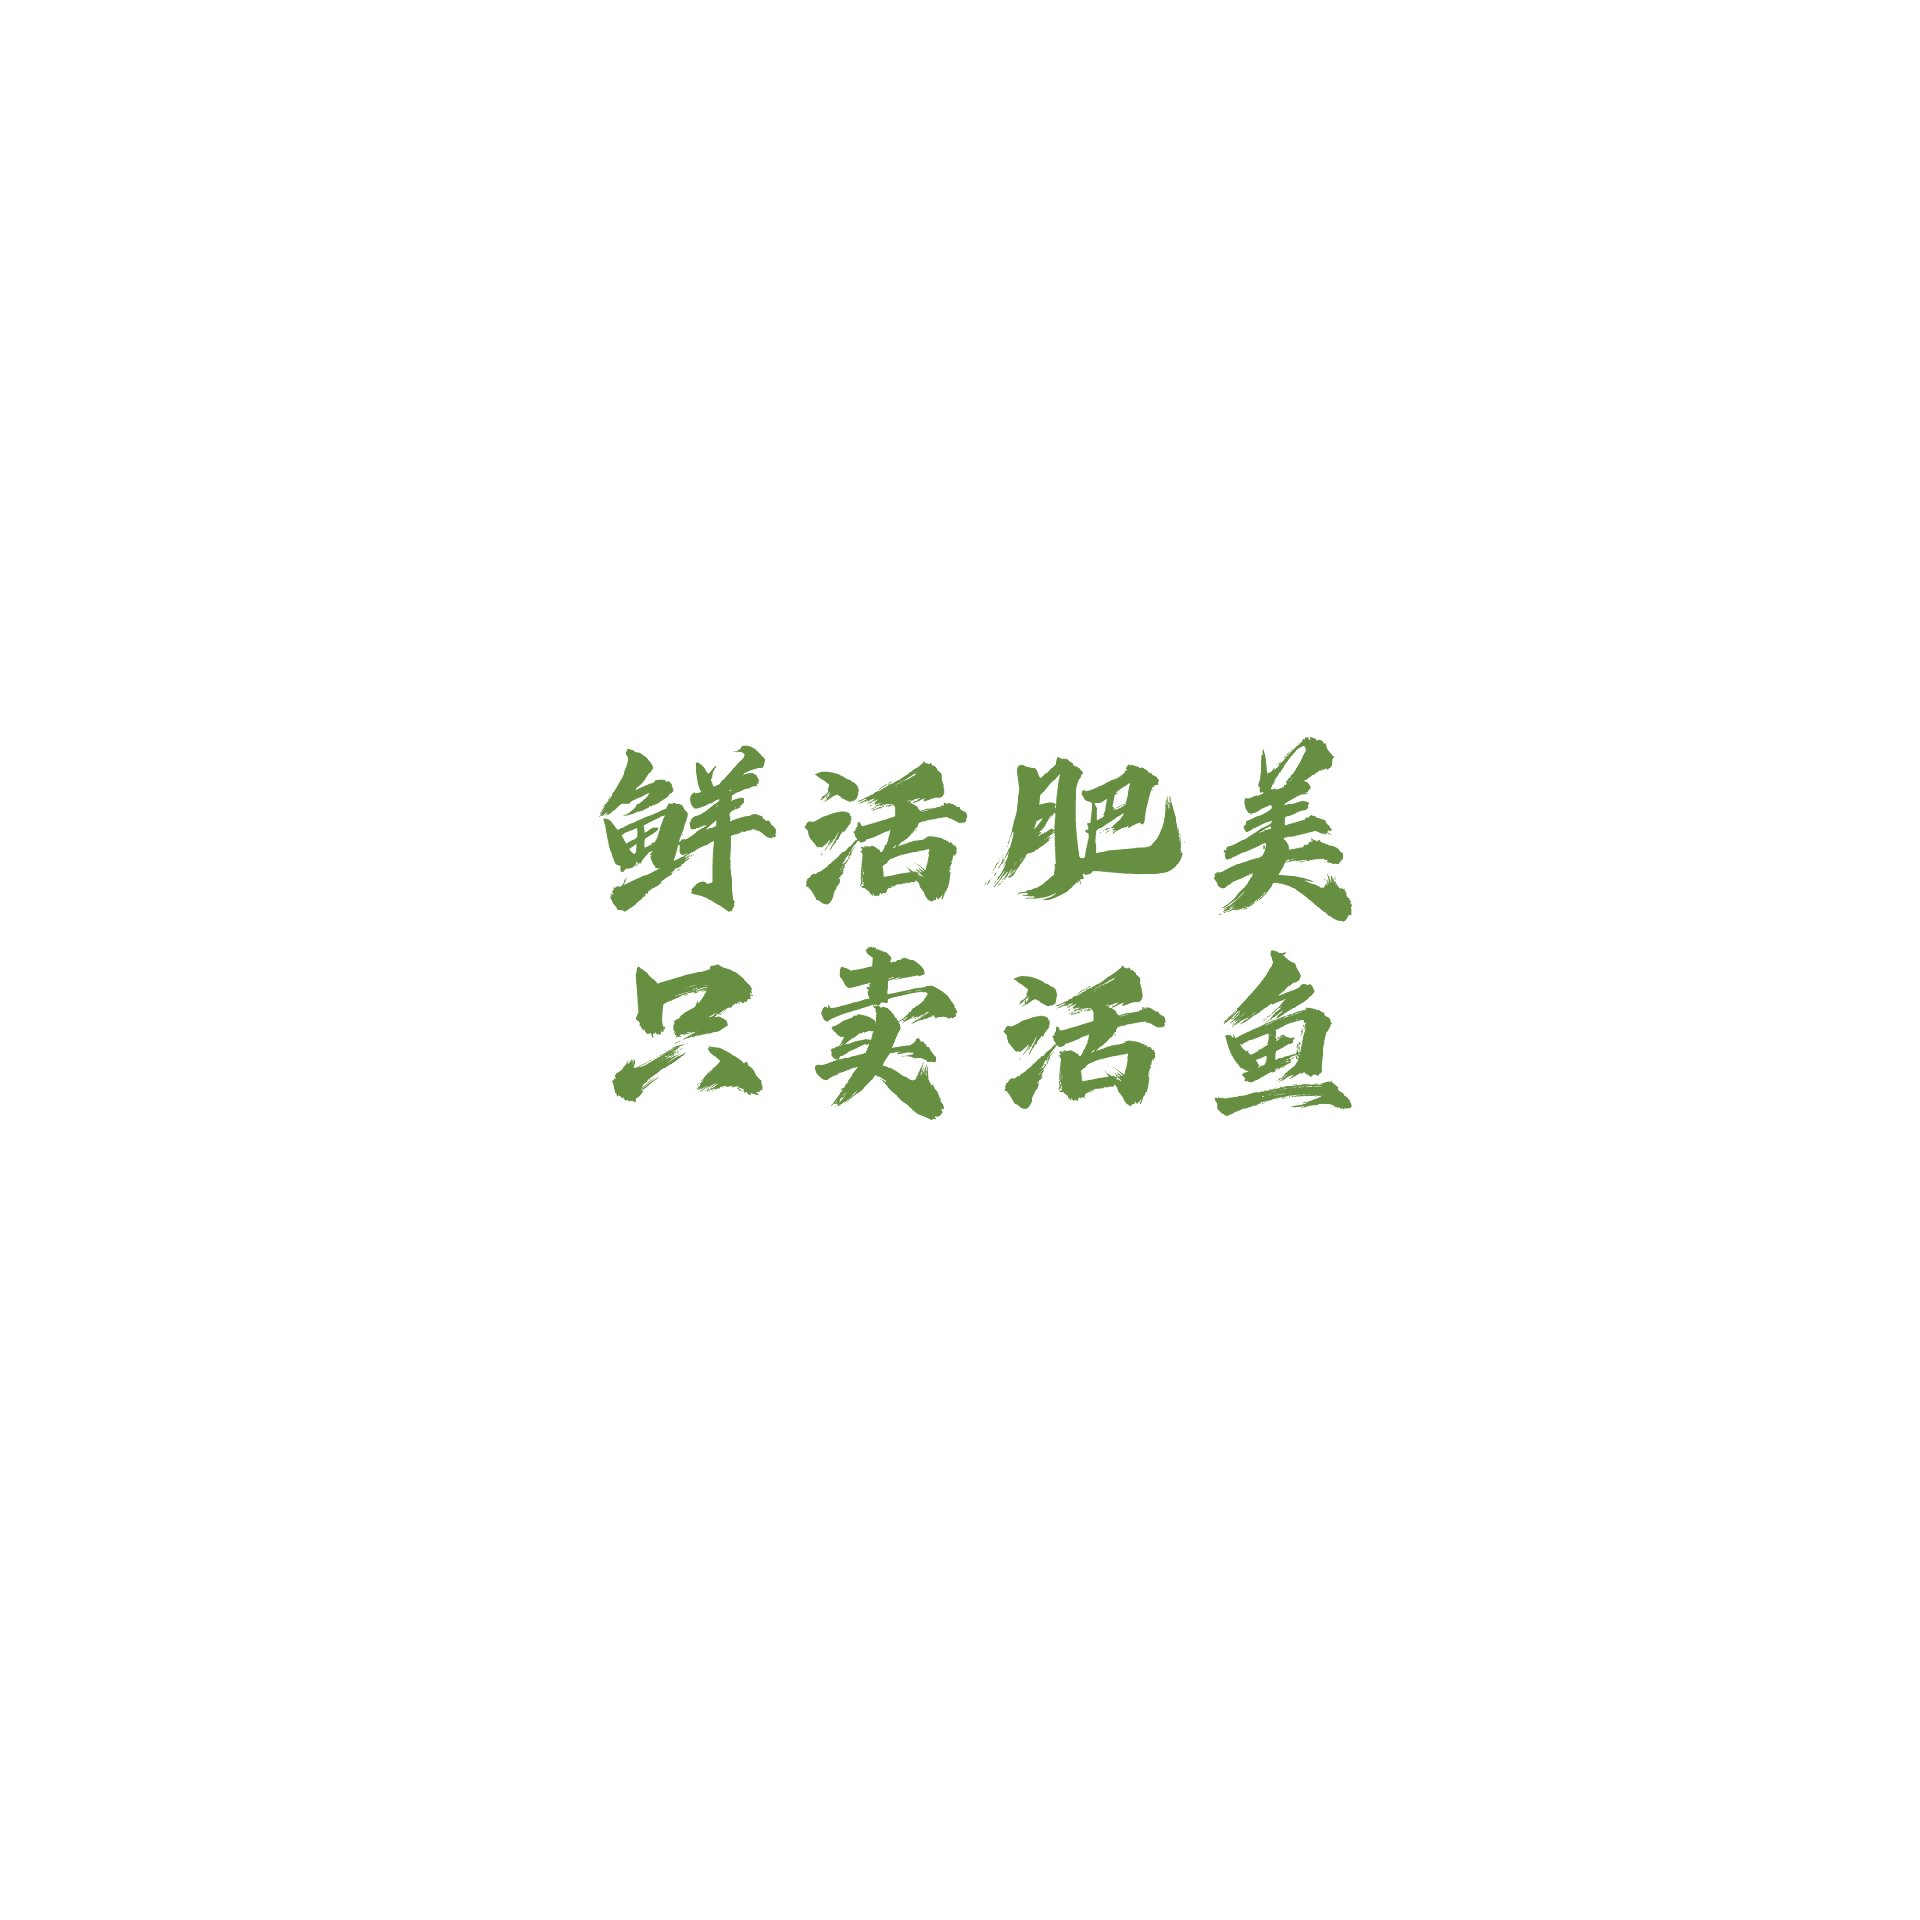 李二鲜鱼火锅logo 02.png